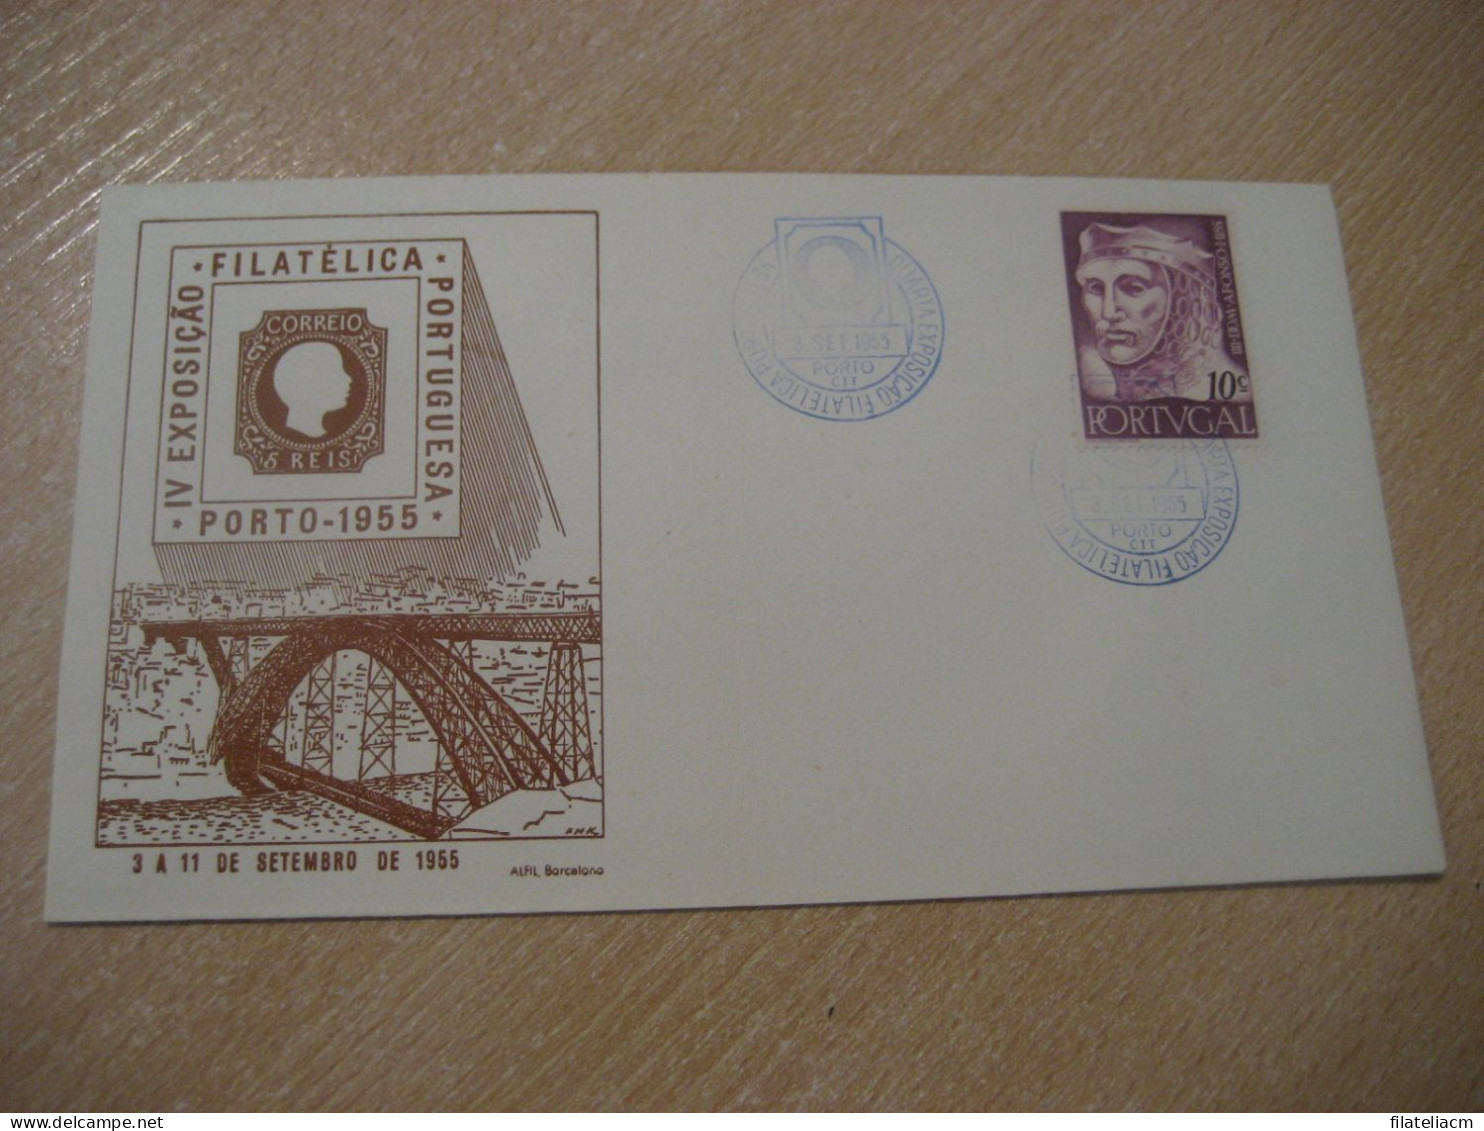 PORTO 1955 Expo Filatelica Stamp Bridge Cancel Cover PORTUGAL - Lettres & Documents